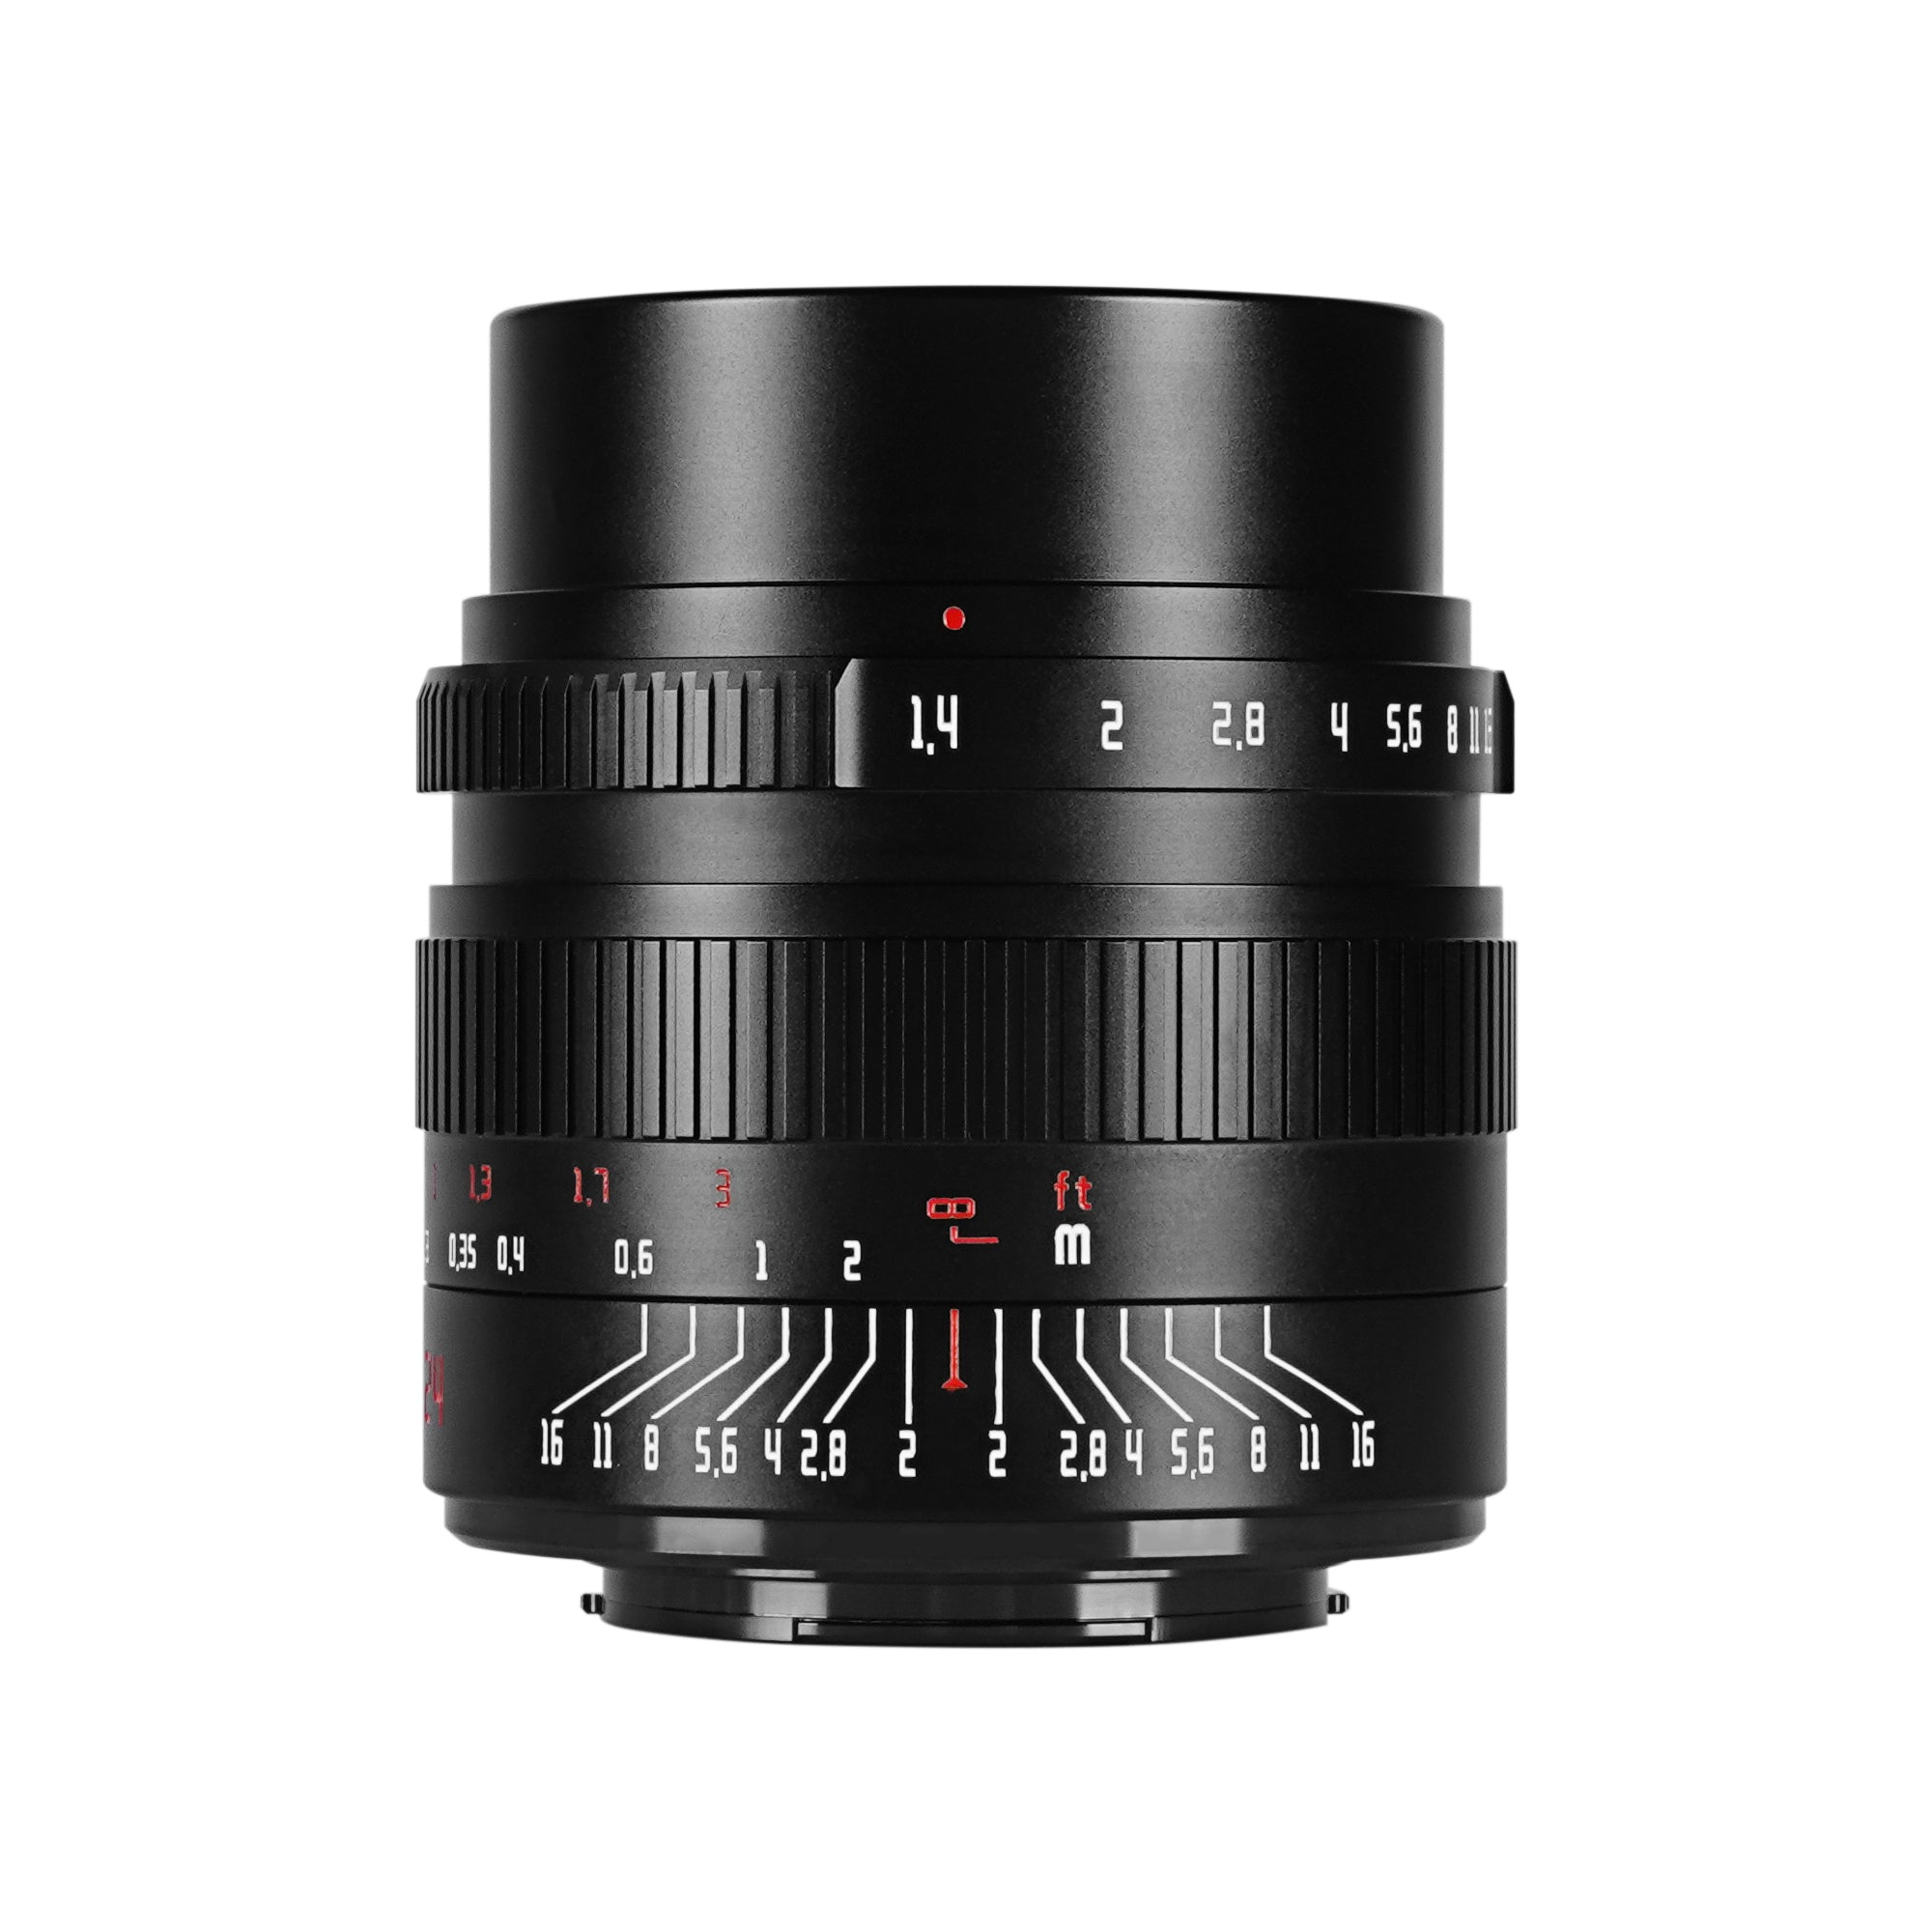 7artisans 24mm f/1.4 APS-C Lens for Sony E